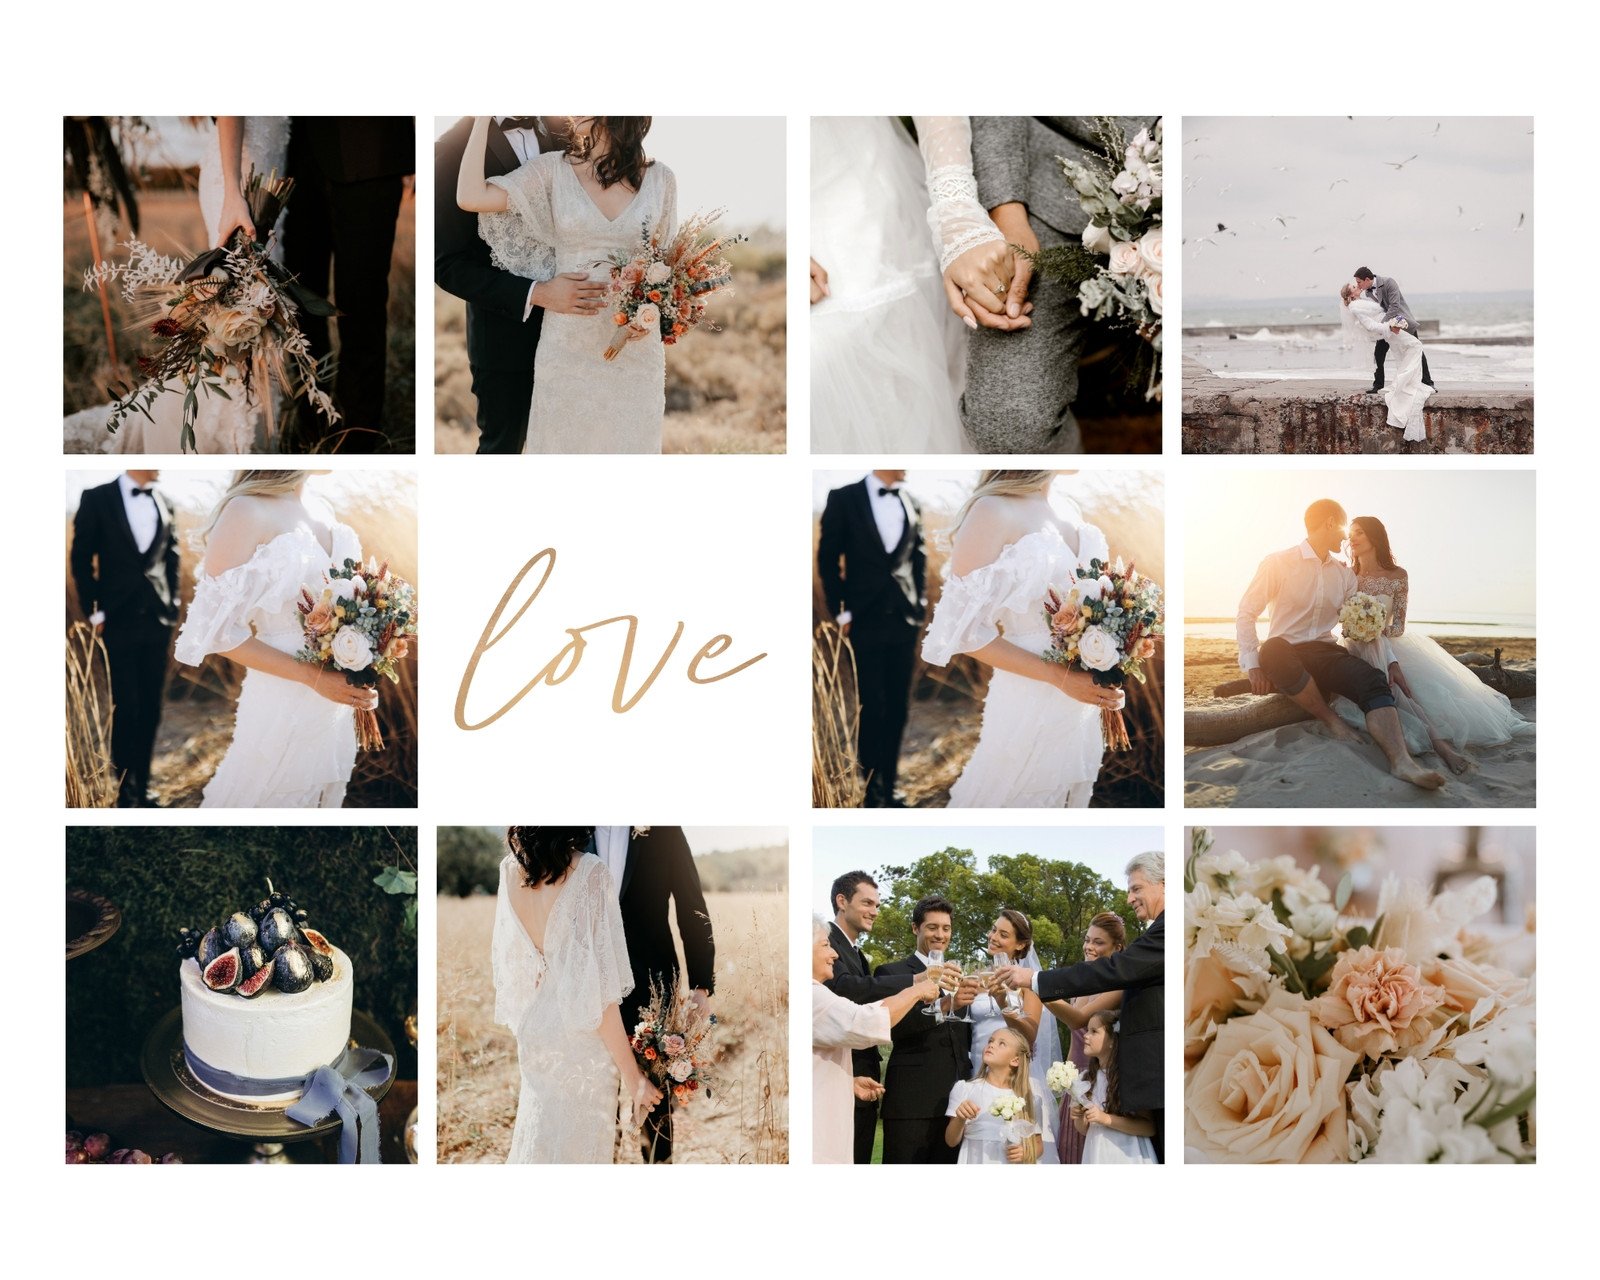 Mẫu ảnh tổng hợp đám cưới - Chia sẻ những khoảnh khắc đáng nhớ của đám cưới của bạn với mẫu ảnh tổng hợp đầy màu sắc và chuyên nghiệp. Tạo ra một tác phẩm nghệ thuật đầy yêu thương để giữ lấy những kỷ niệm đáng nhớ. 